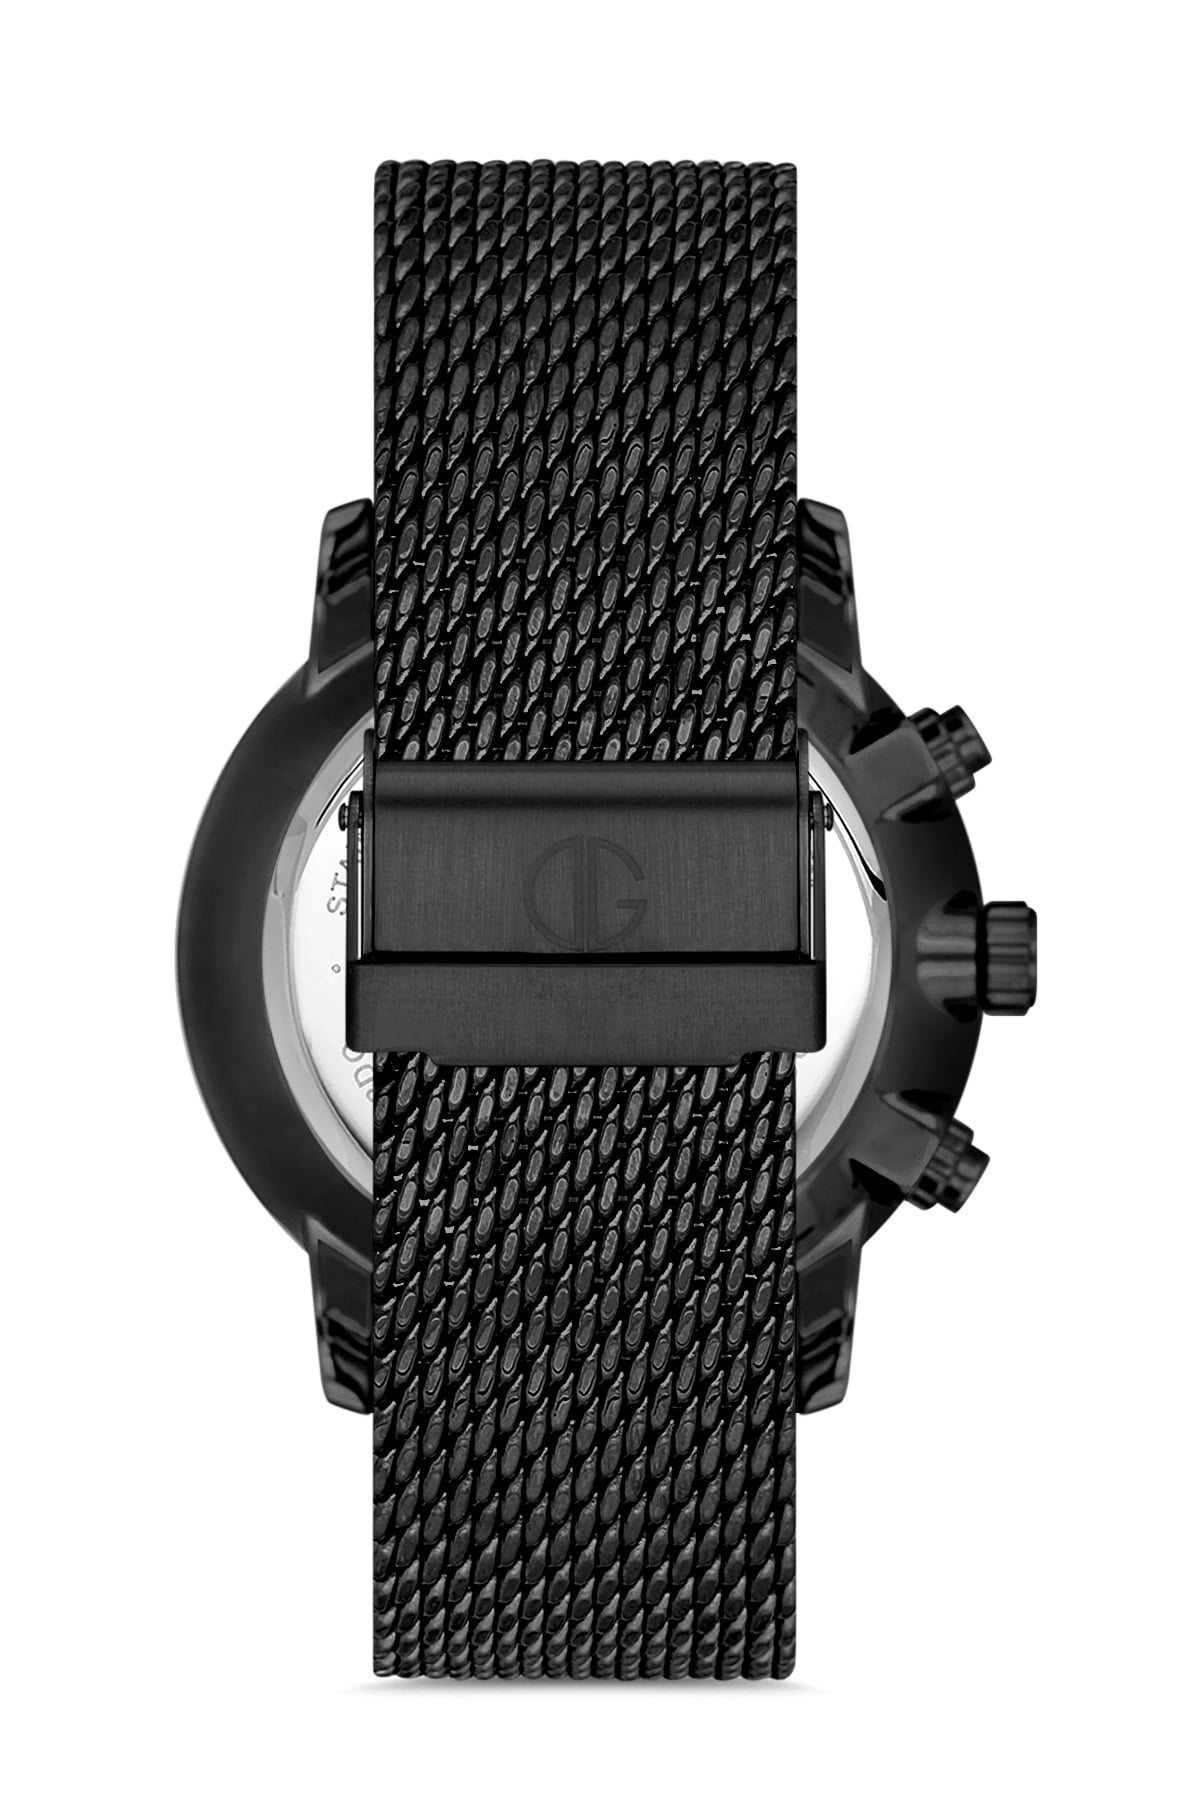 Davıd Guner Multifunctional Black Coated Men's Wristwatch